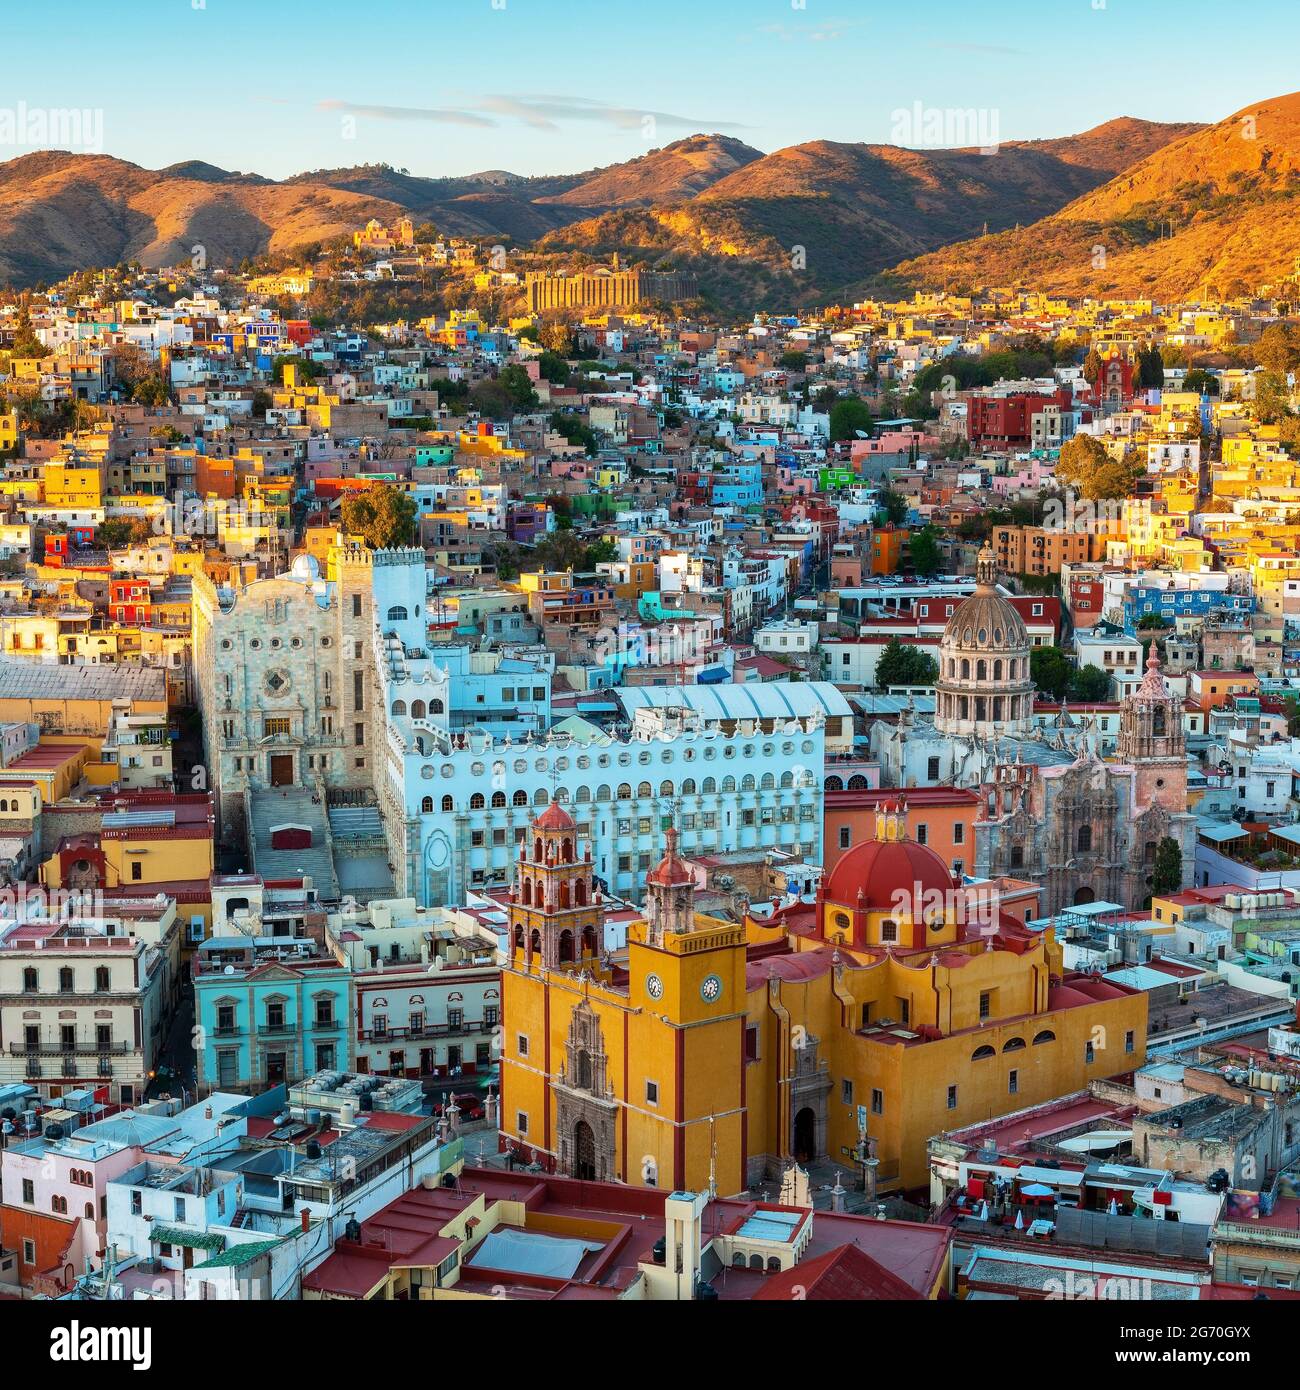 Stadtbild von Guanajuato bei Sonnenuntergang mit der Basilika unserer Lieben Frau von Guanajuato, Mexiko. Quadratisches Format. Stockfoto